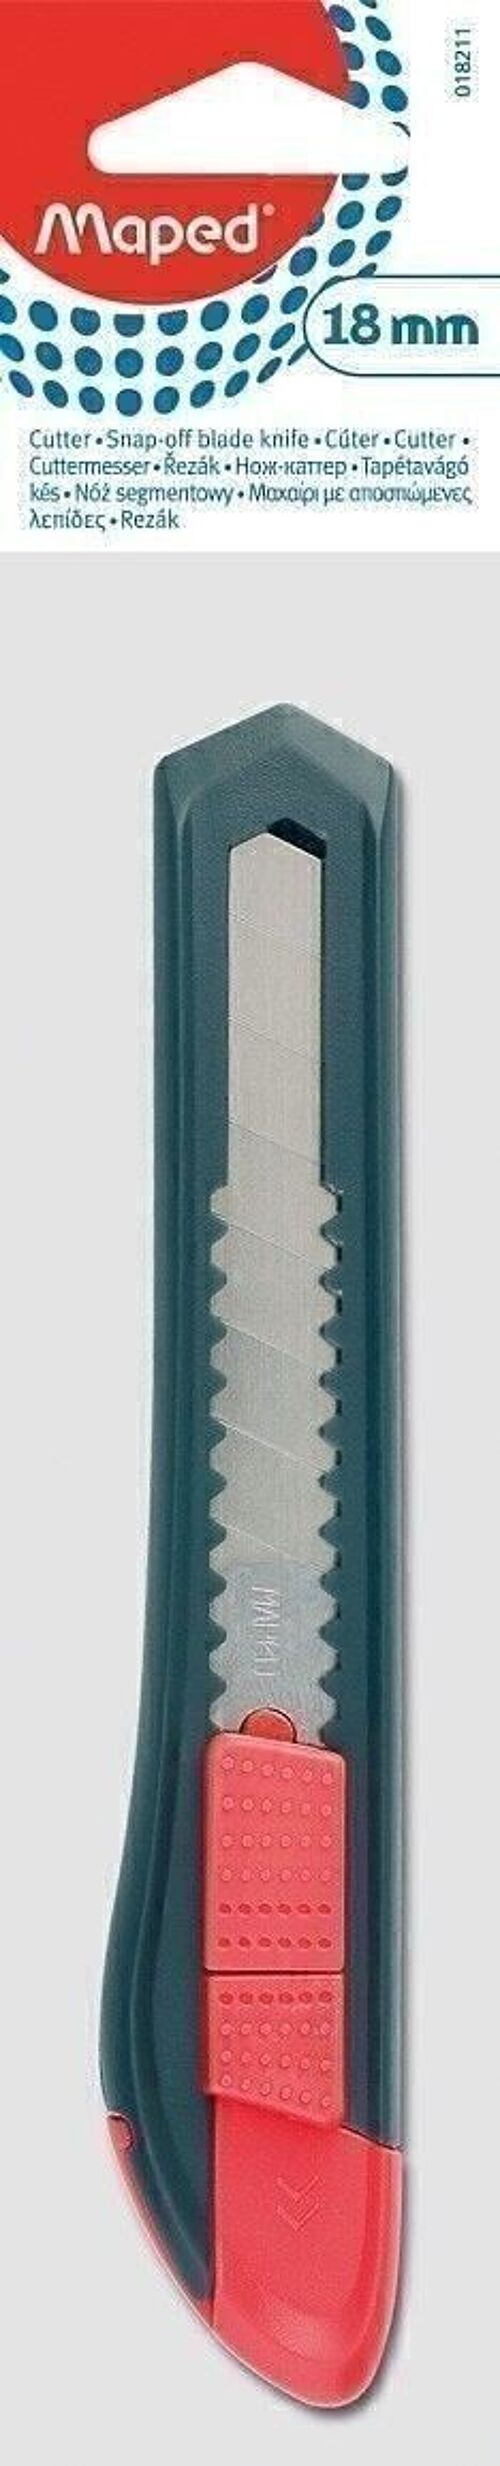 Cutter START plastique 18 mm, en sachet brochable